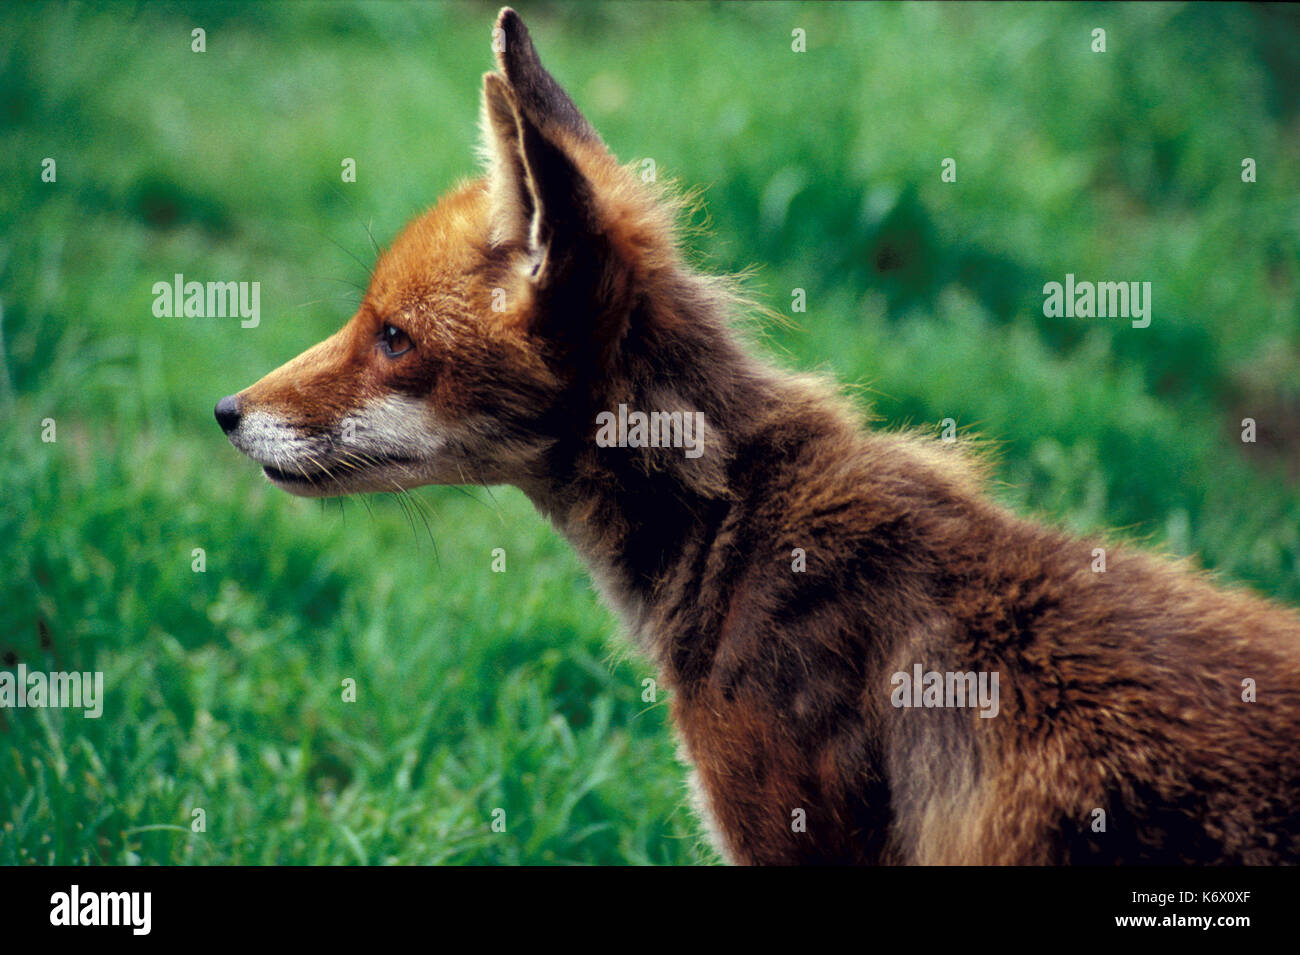 Red Fox (Vulpes vulpes) Seite Profil zeigen Gesicht, Augen und Ohren. Stockfoto